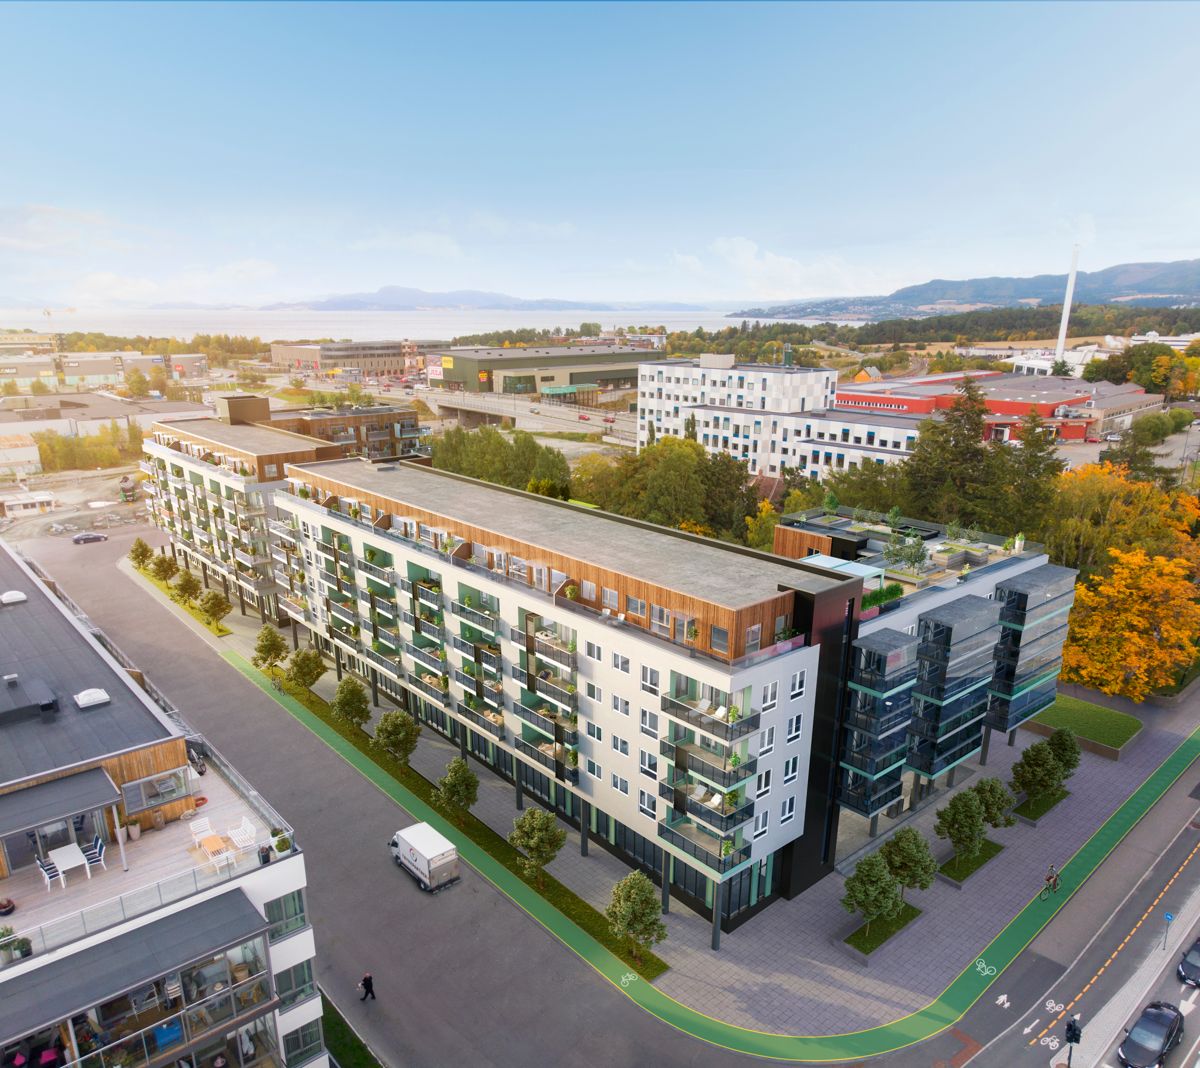 På Liljendal/Falkenborg erTrym Bolig klare til å sette i gang med et prosjekt med 133 leiligheter, omtrent 2.350 kvadratmeter næring og parkering, men prosjektet stoppes av manglende skolekapasitet i området. Illustrasjon: Arqsix